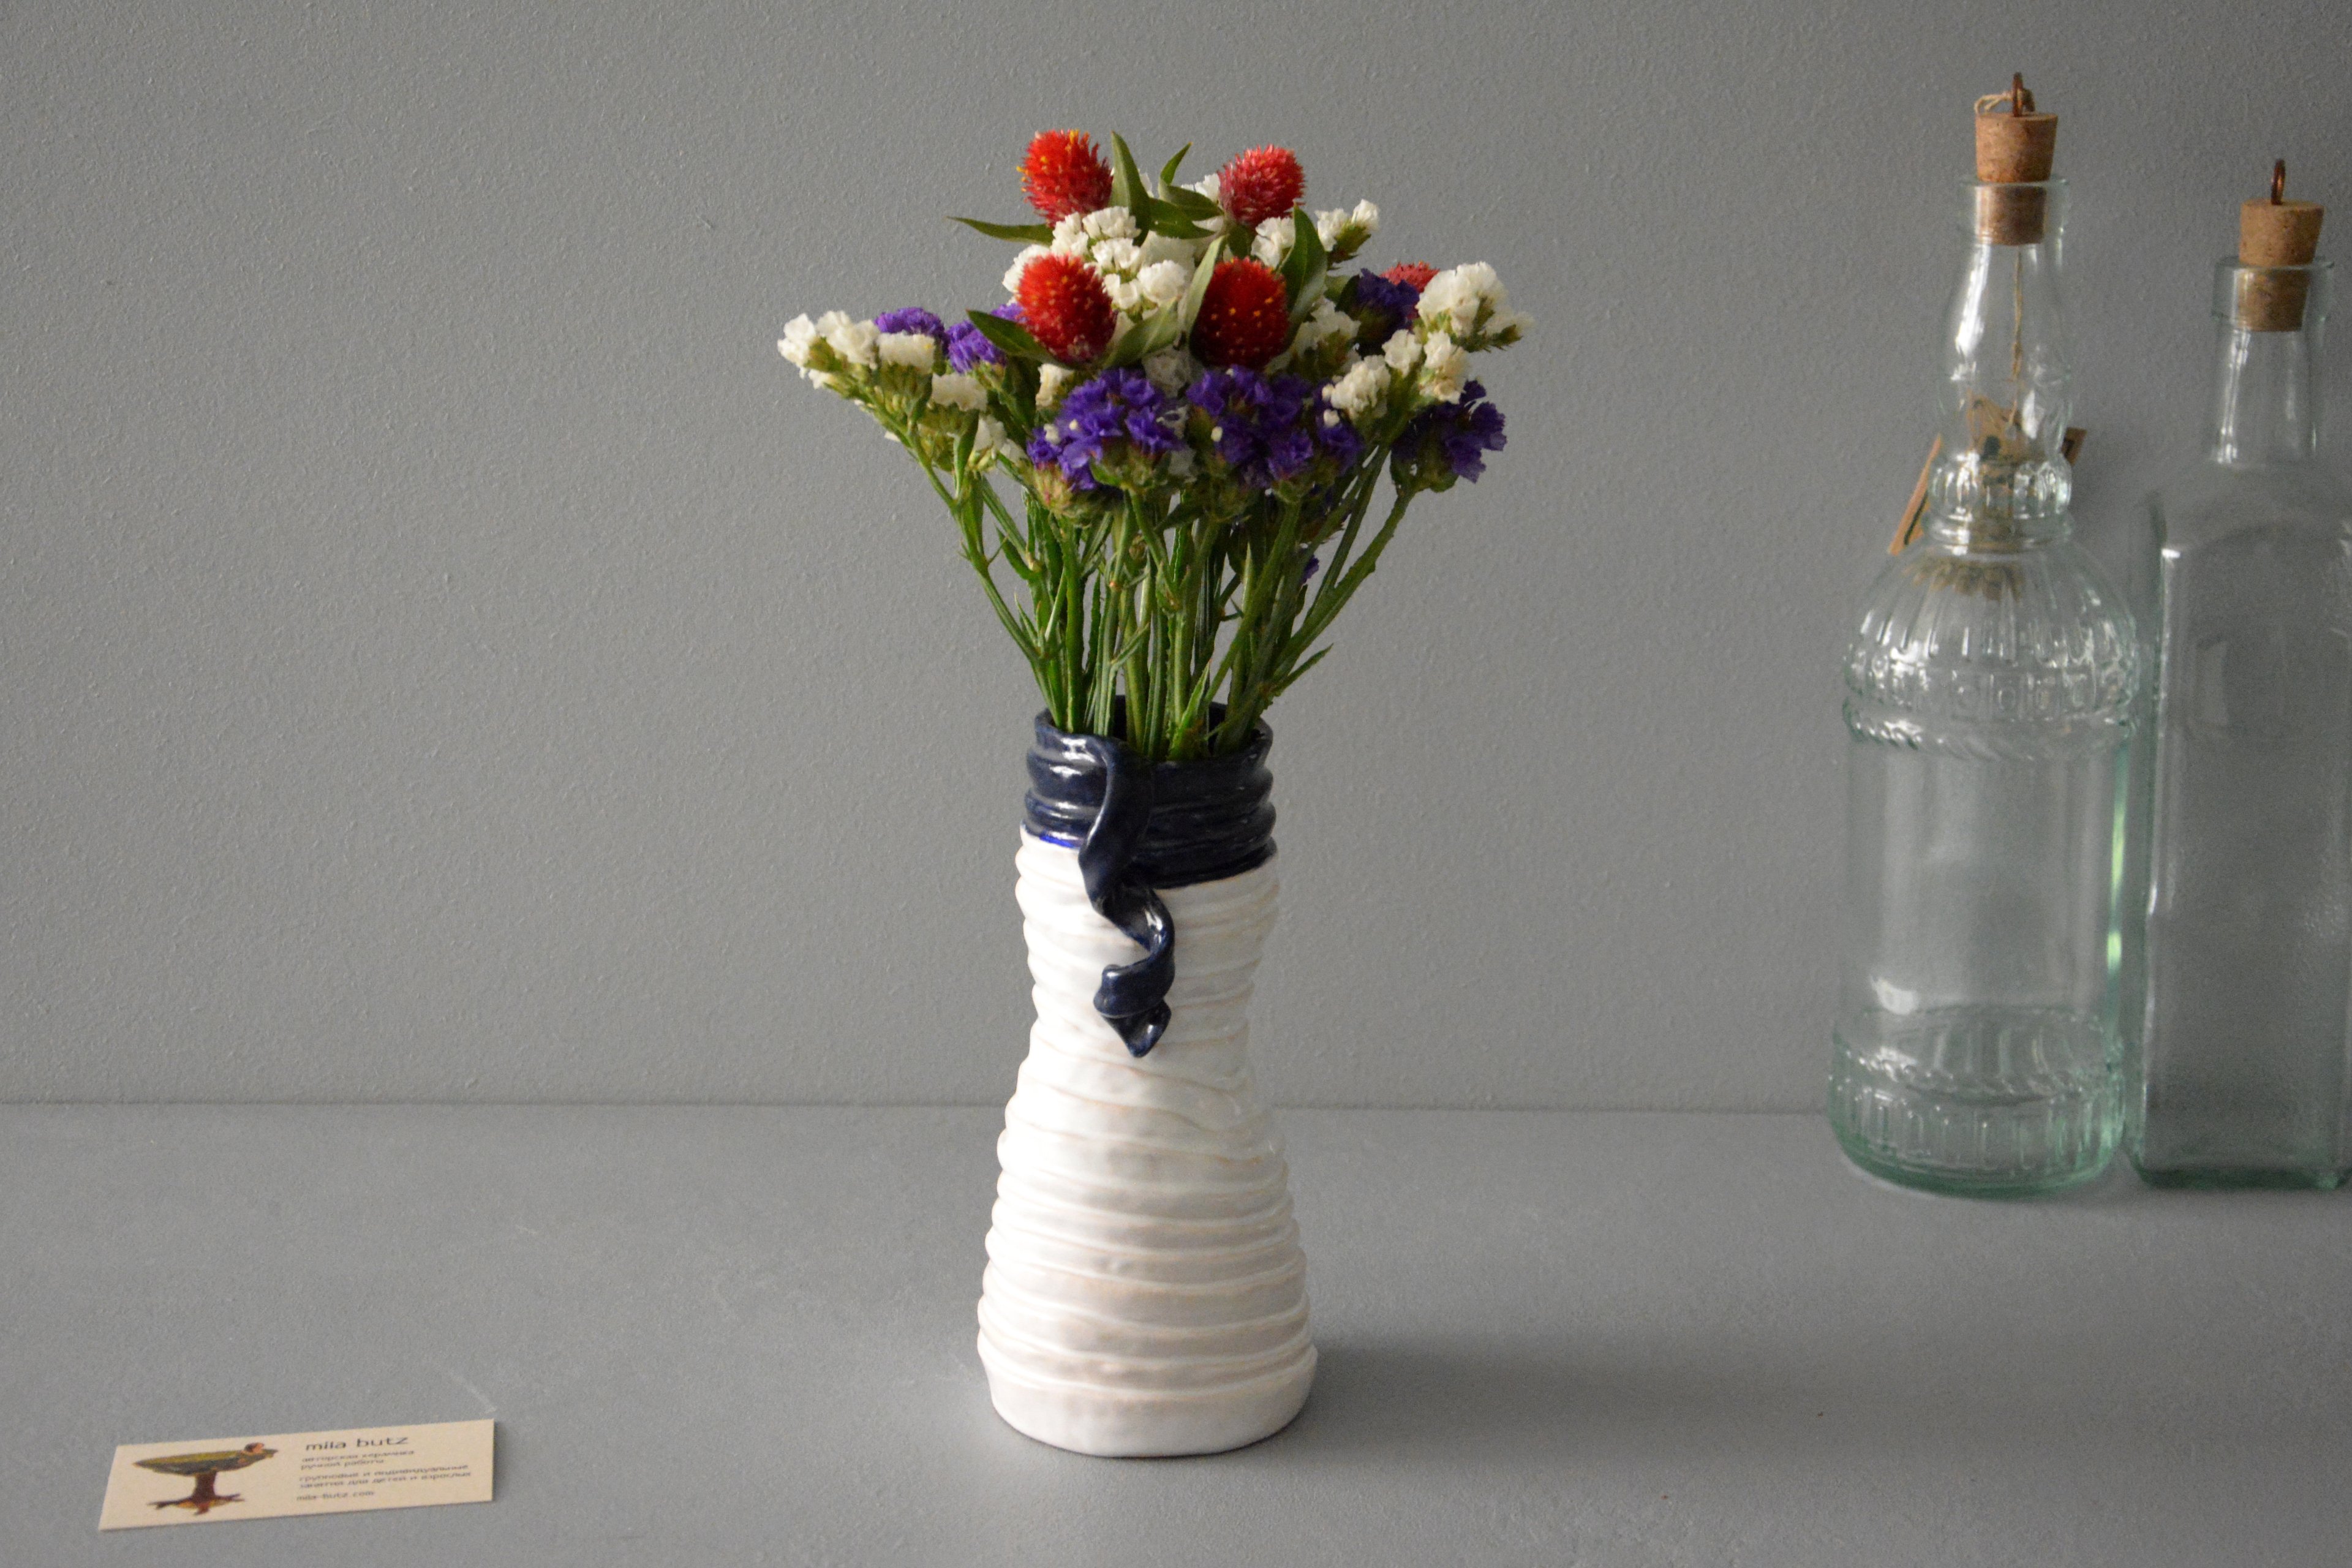 Decorative vase "Tourniquets and cobalt blue webbing"